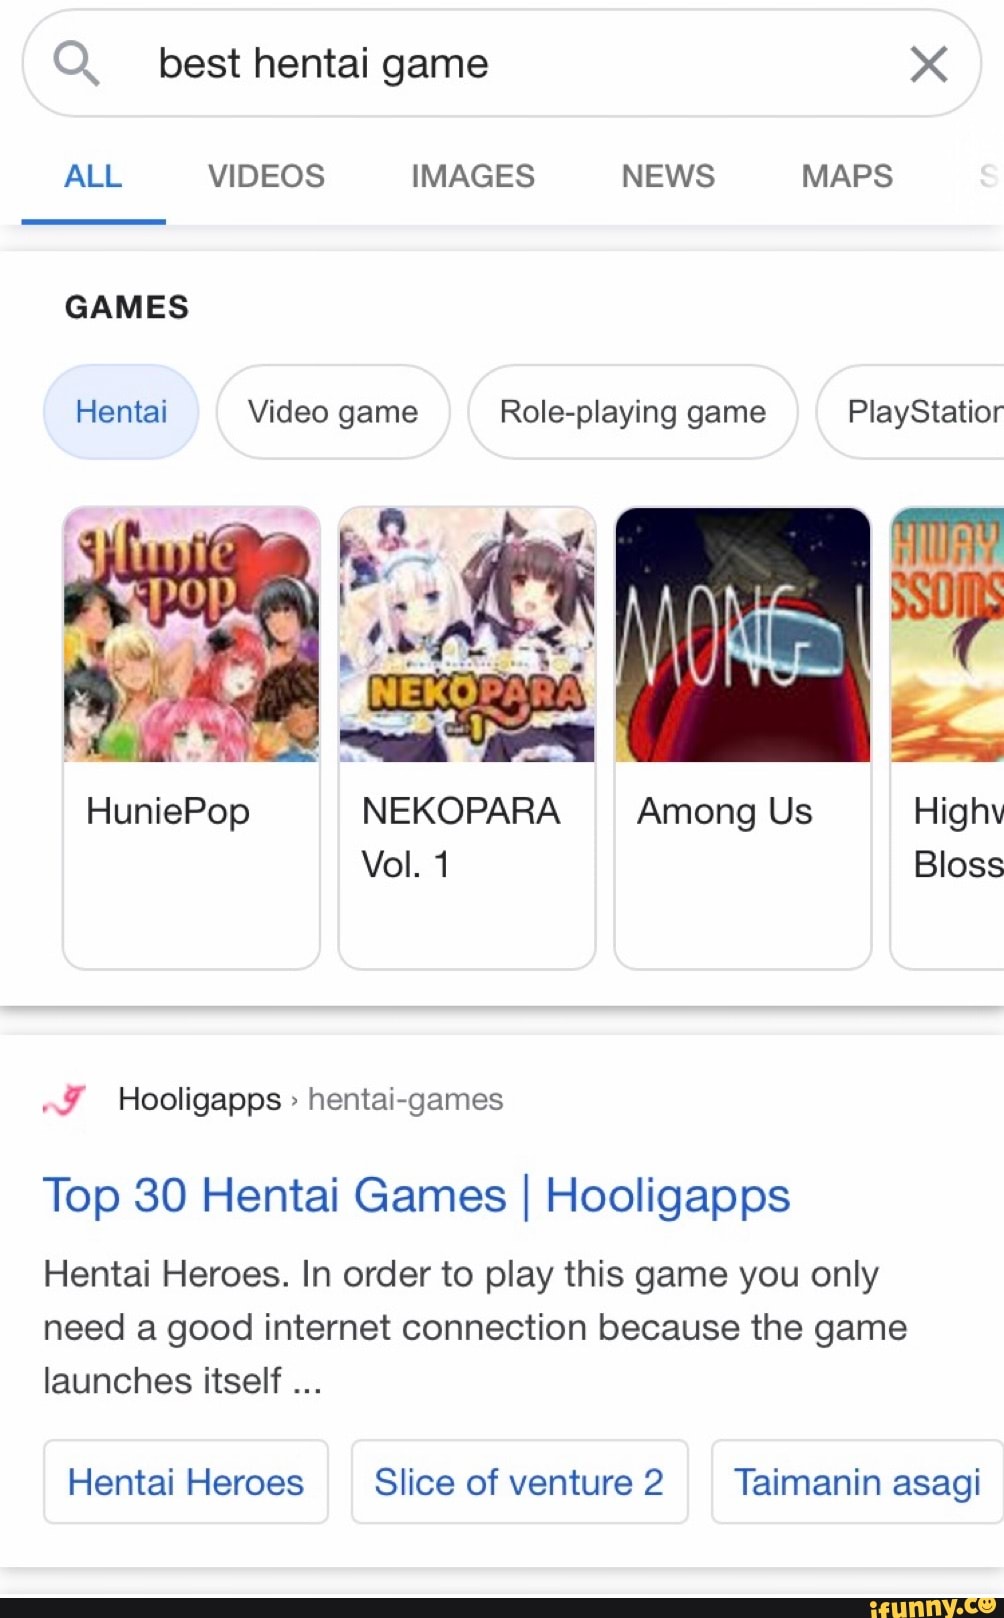 best hentai video games